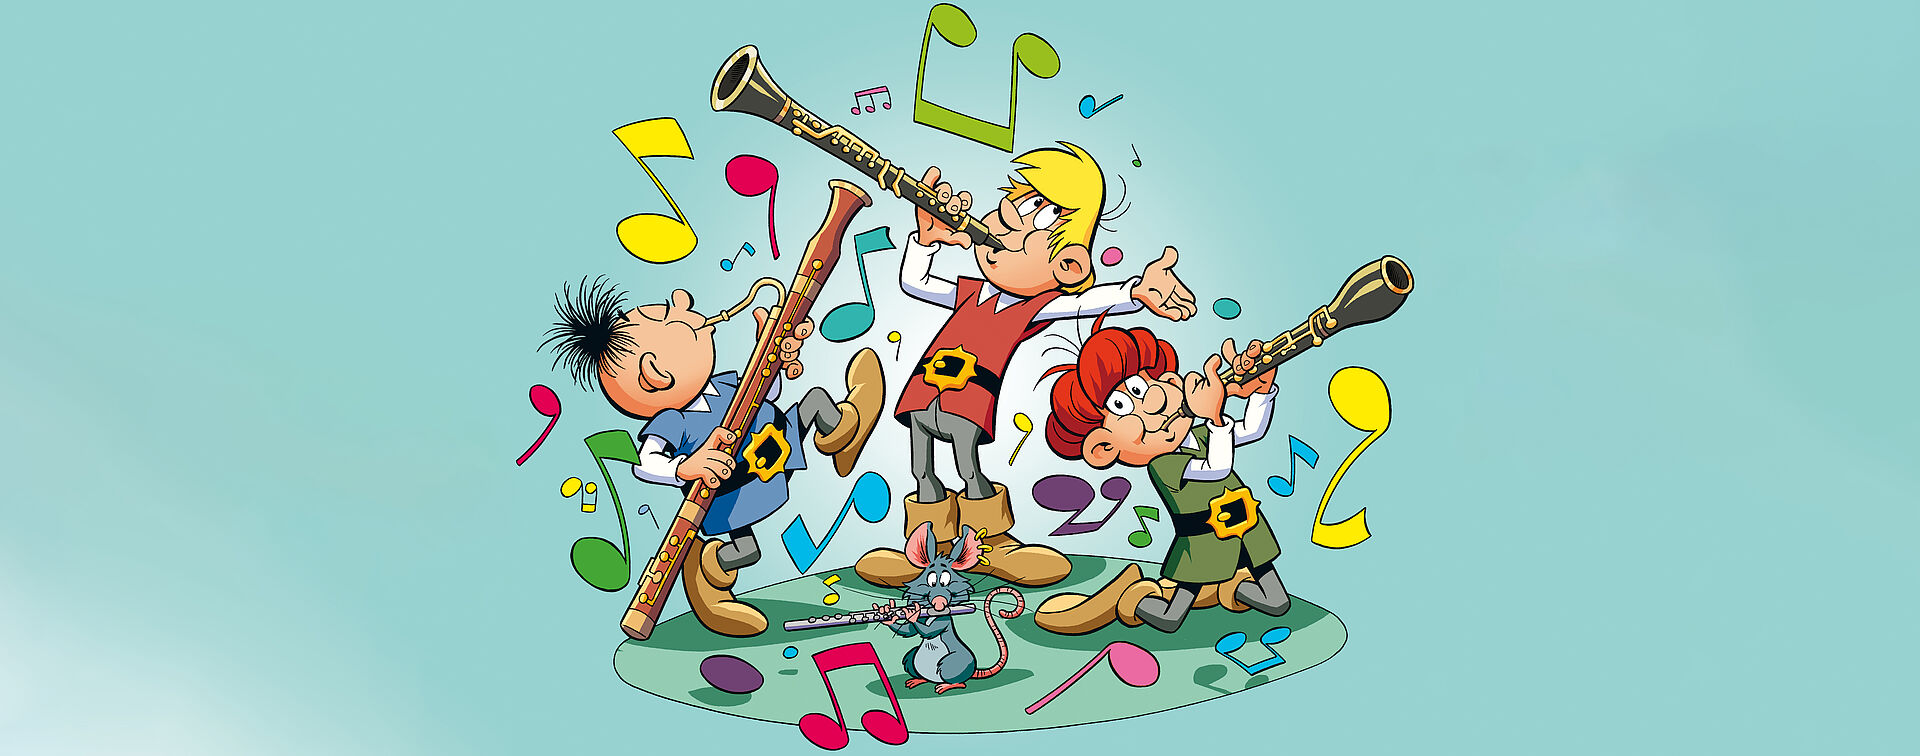 Bild von musizierenden Kindern